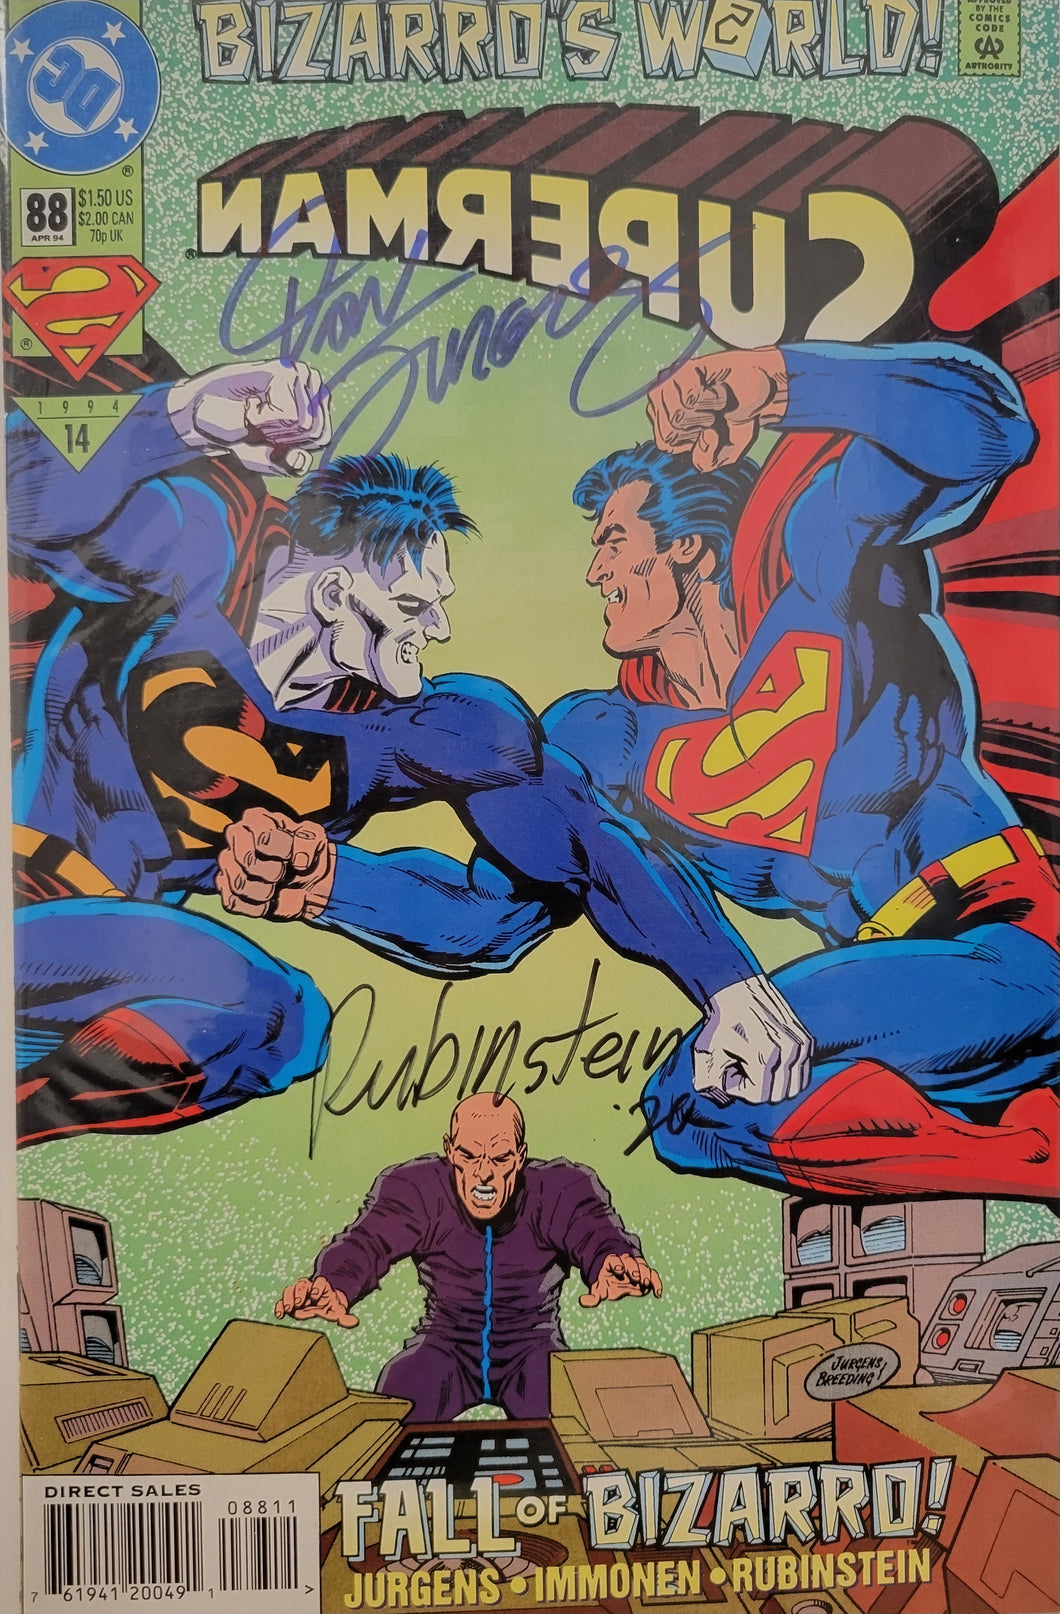 Superman #88 Signed by Dan Jurgens and Joe Rubinstein w/COA